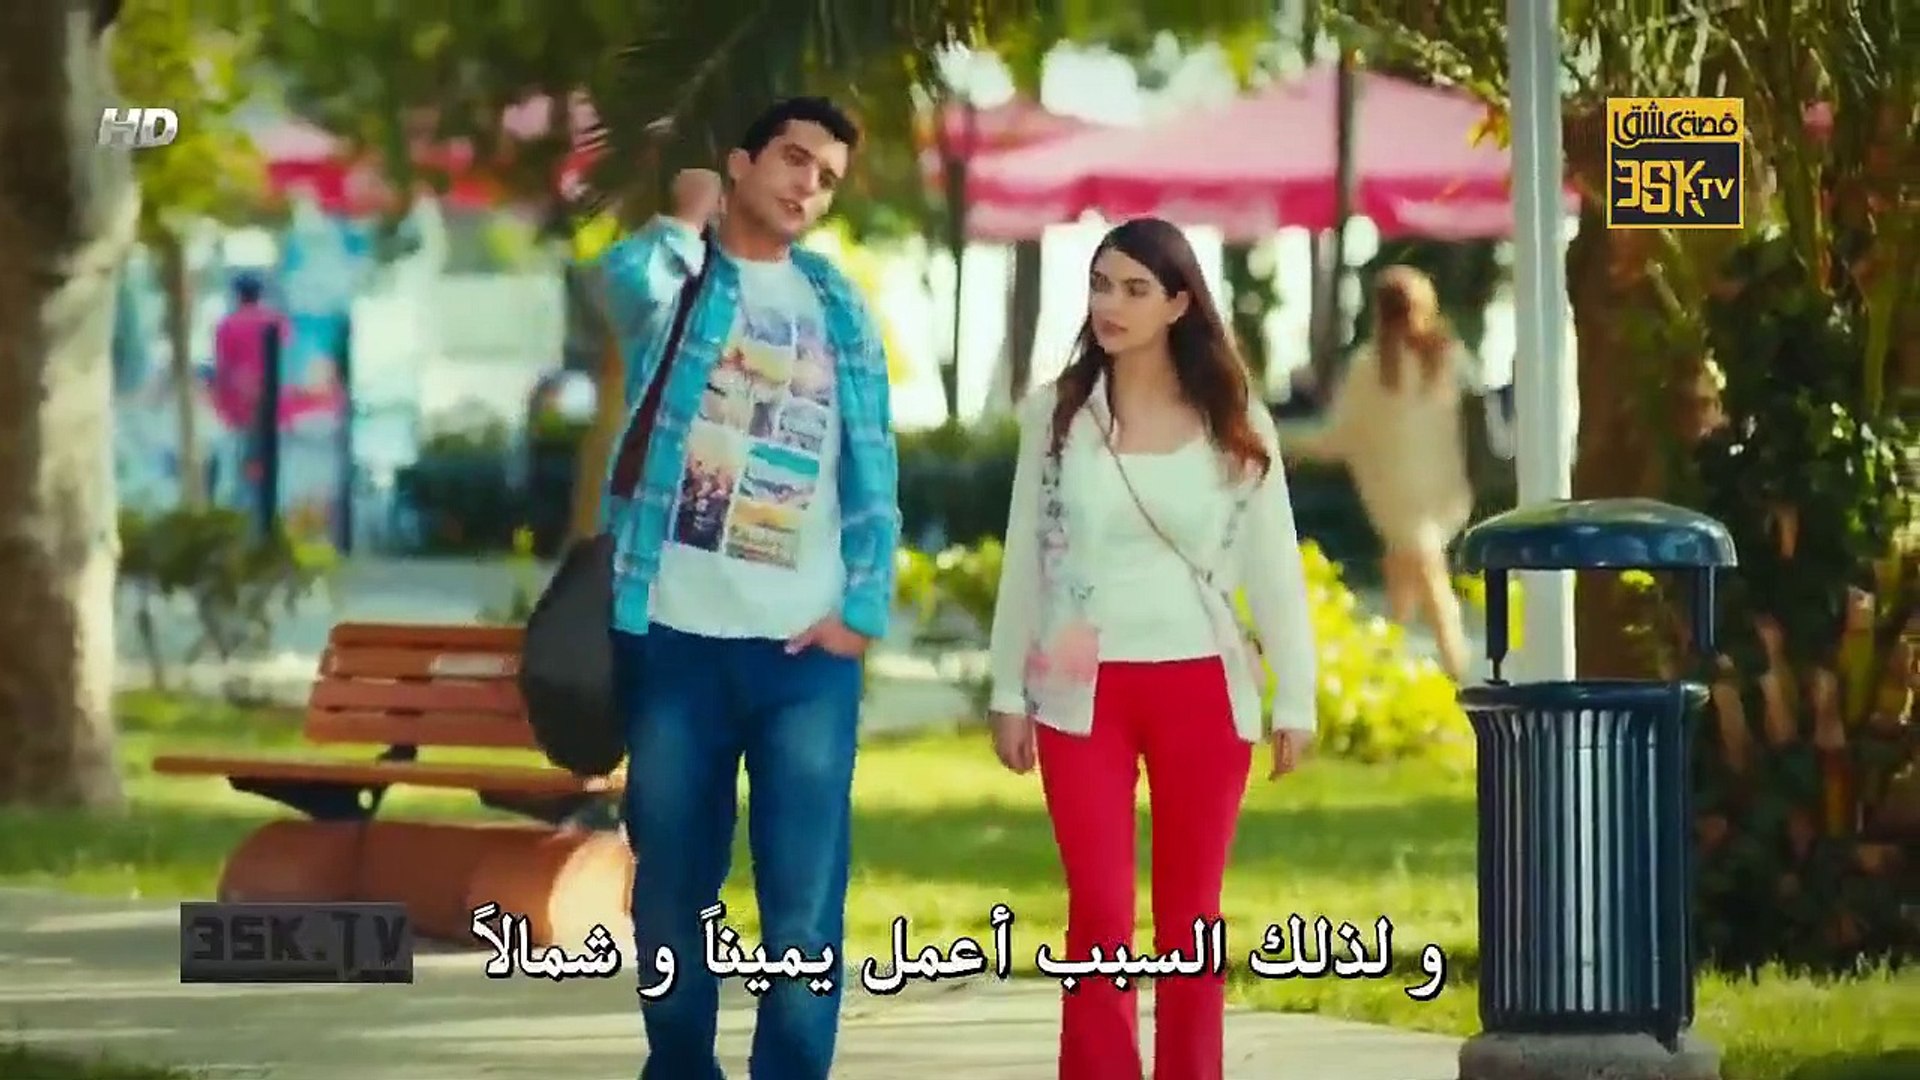 عروسات هاربات الحلقة 1 مترجم للعربية الجزء الثاني فيديو Dailymotion